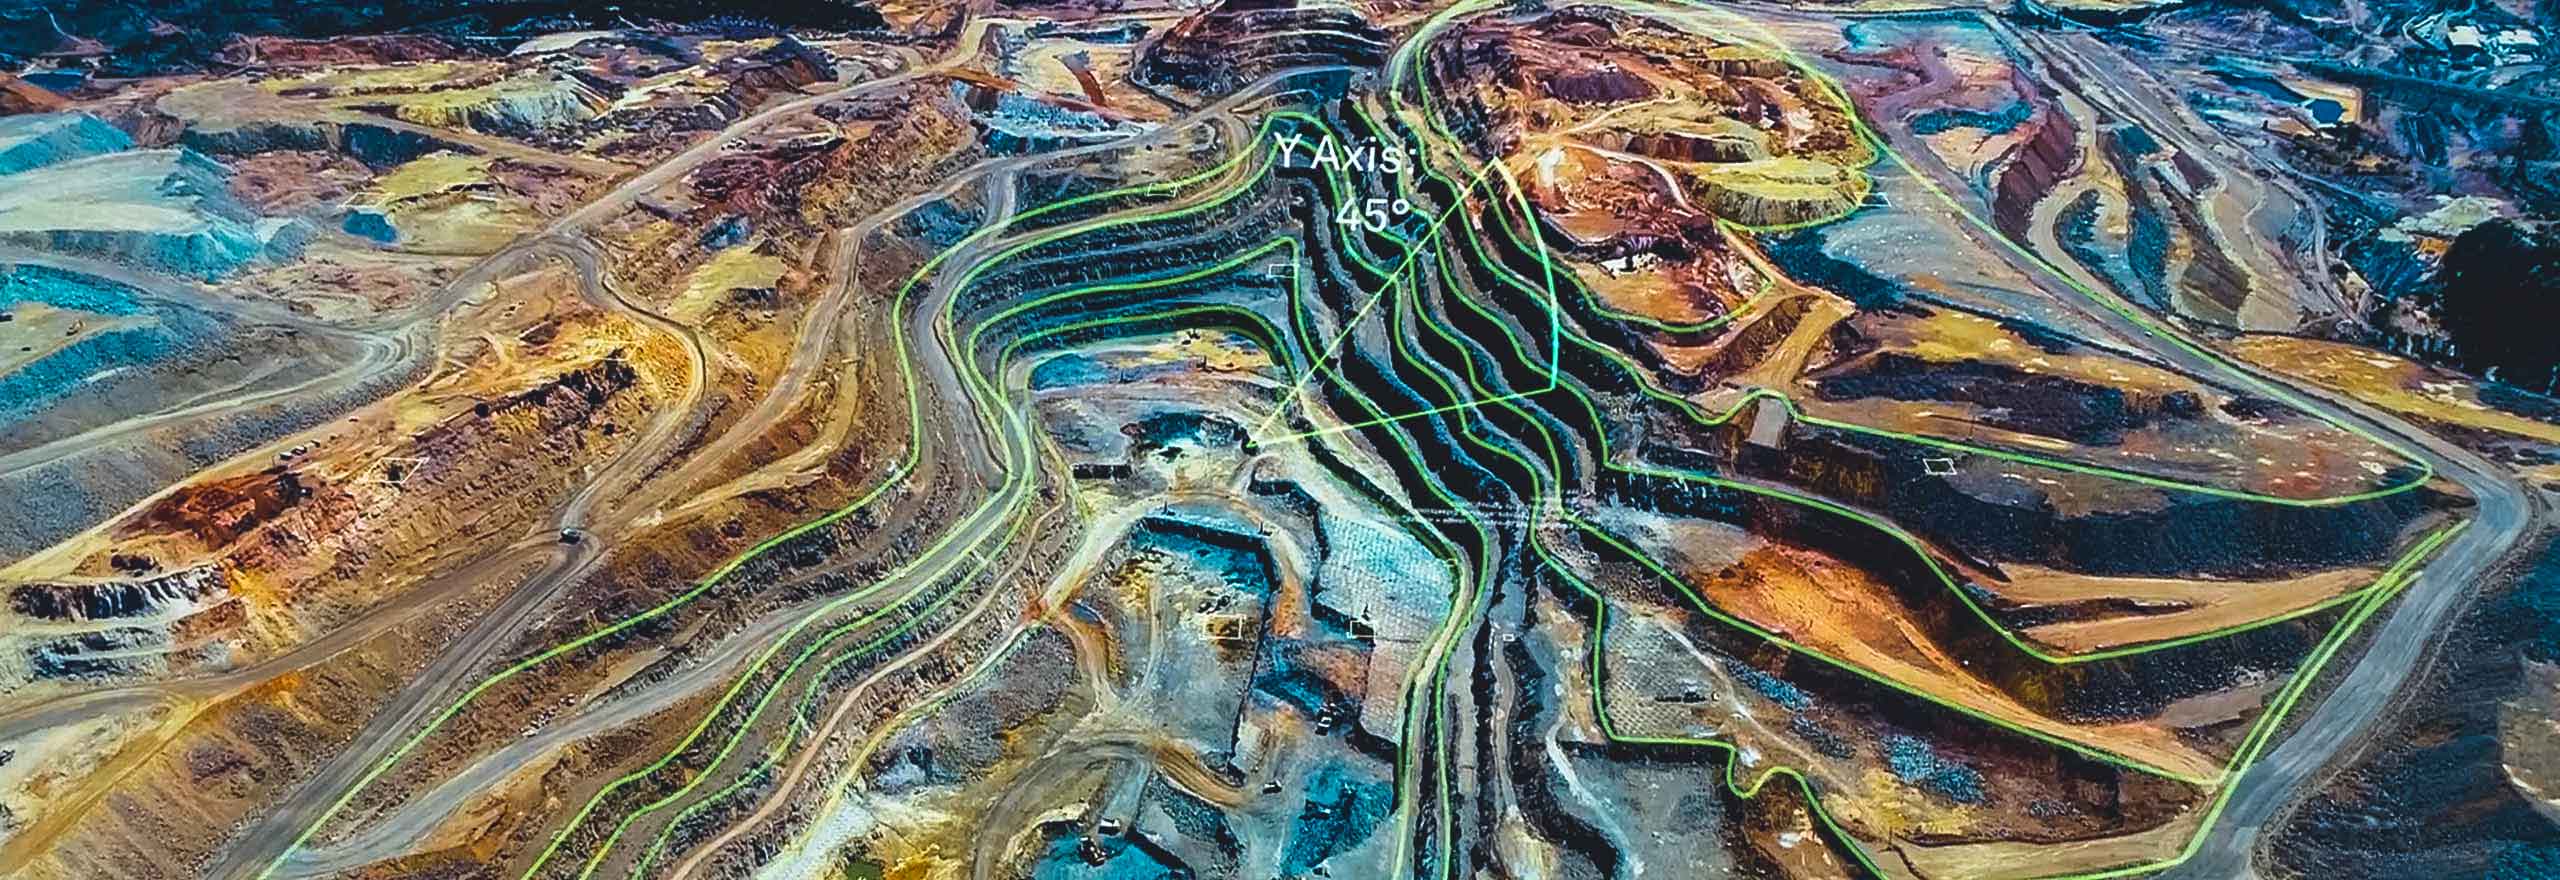 Eine Luftaufnahme eines Bergwerks, überlagert mit digitalen Elementen, die Analytik darstellen